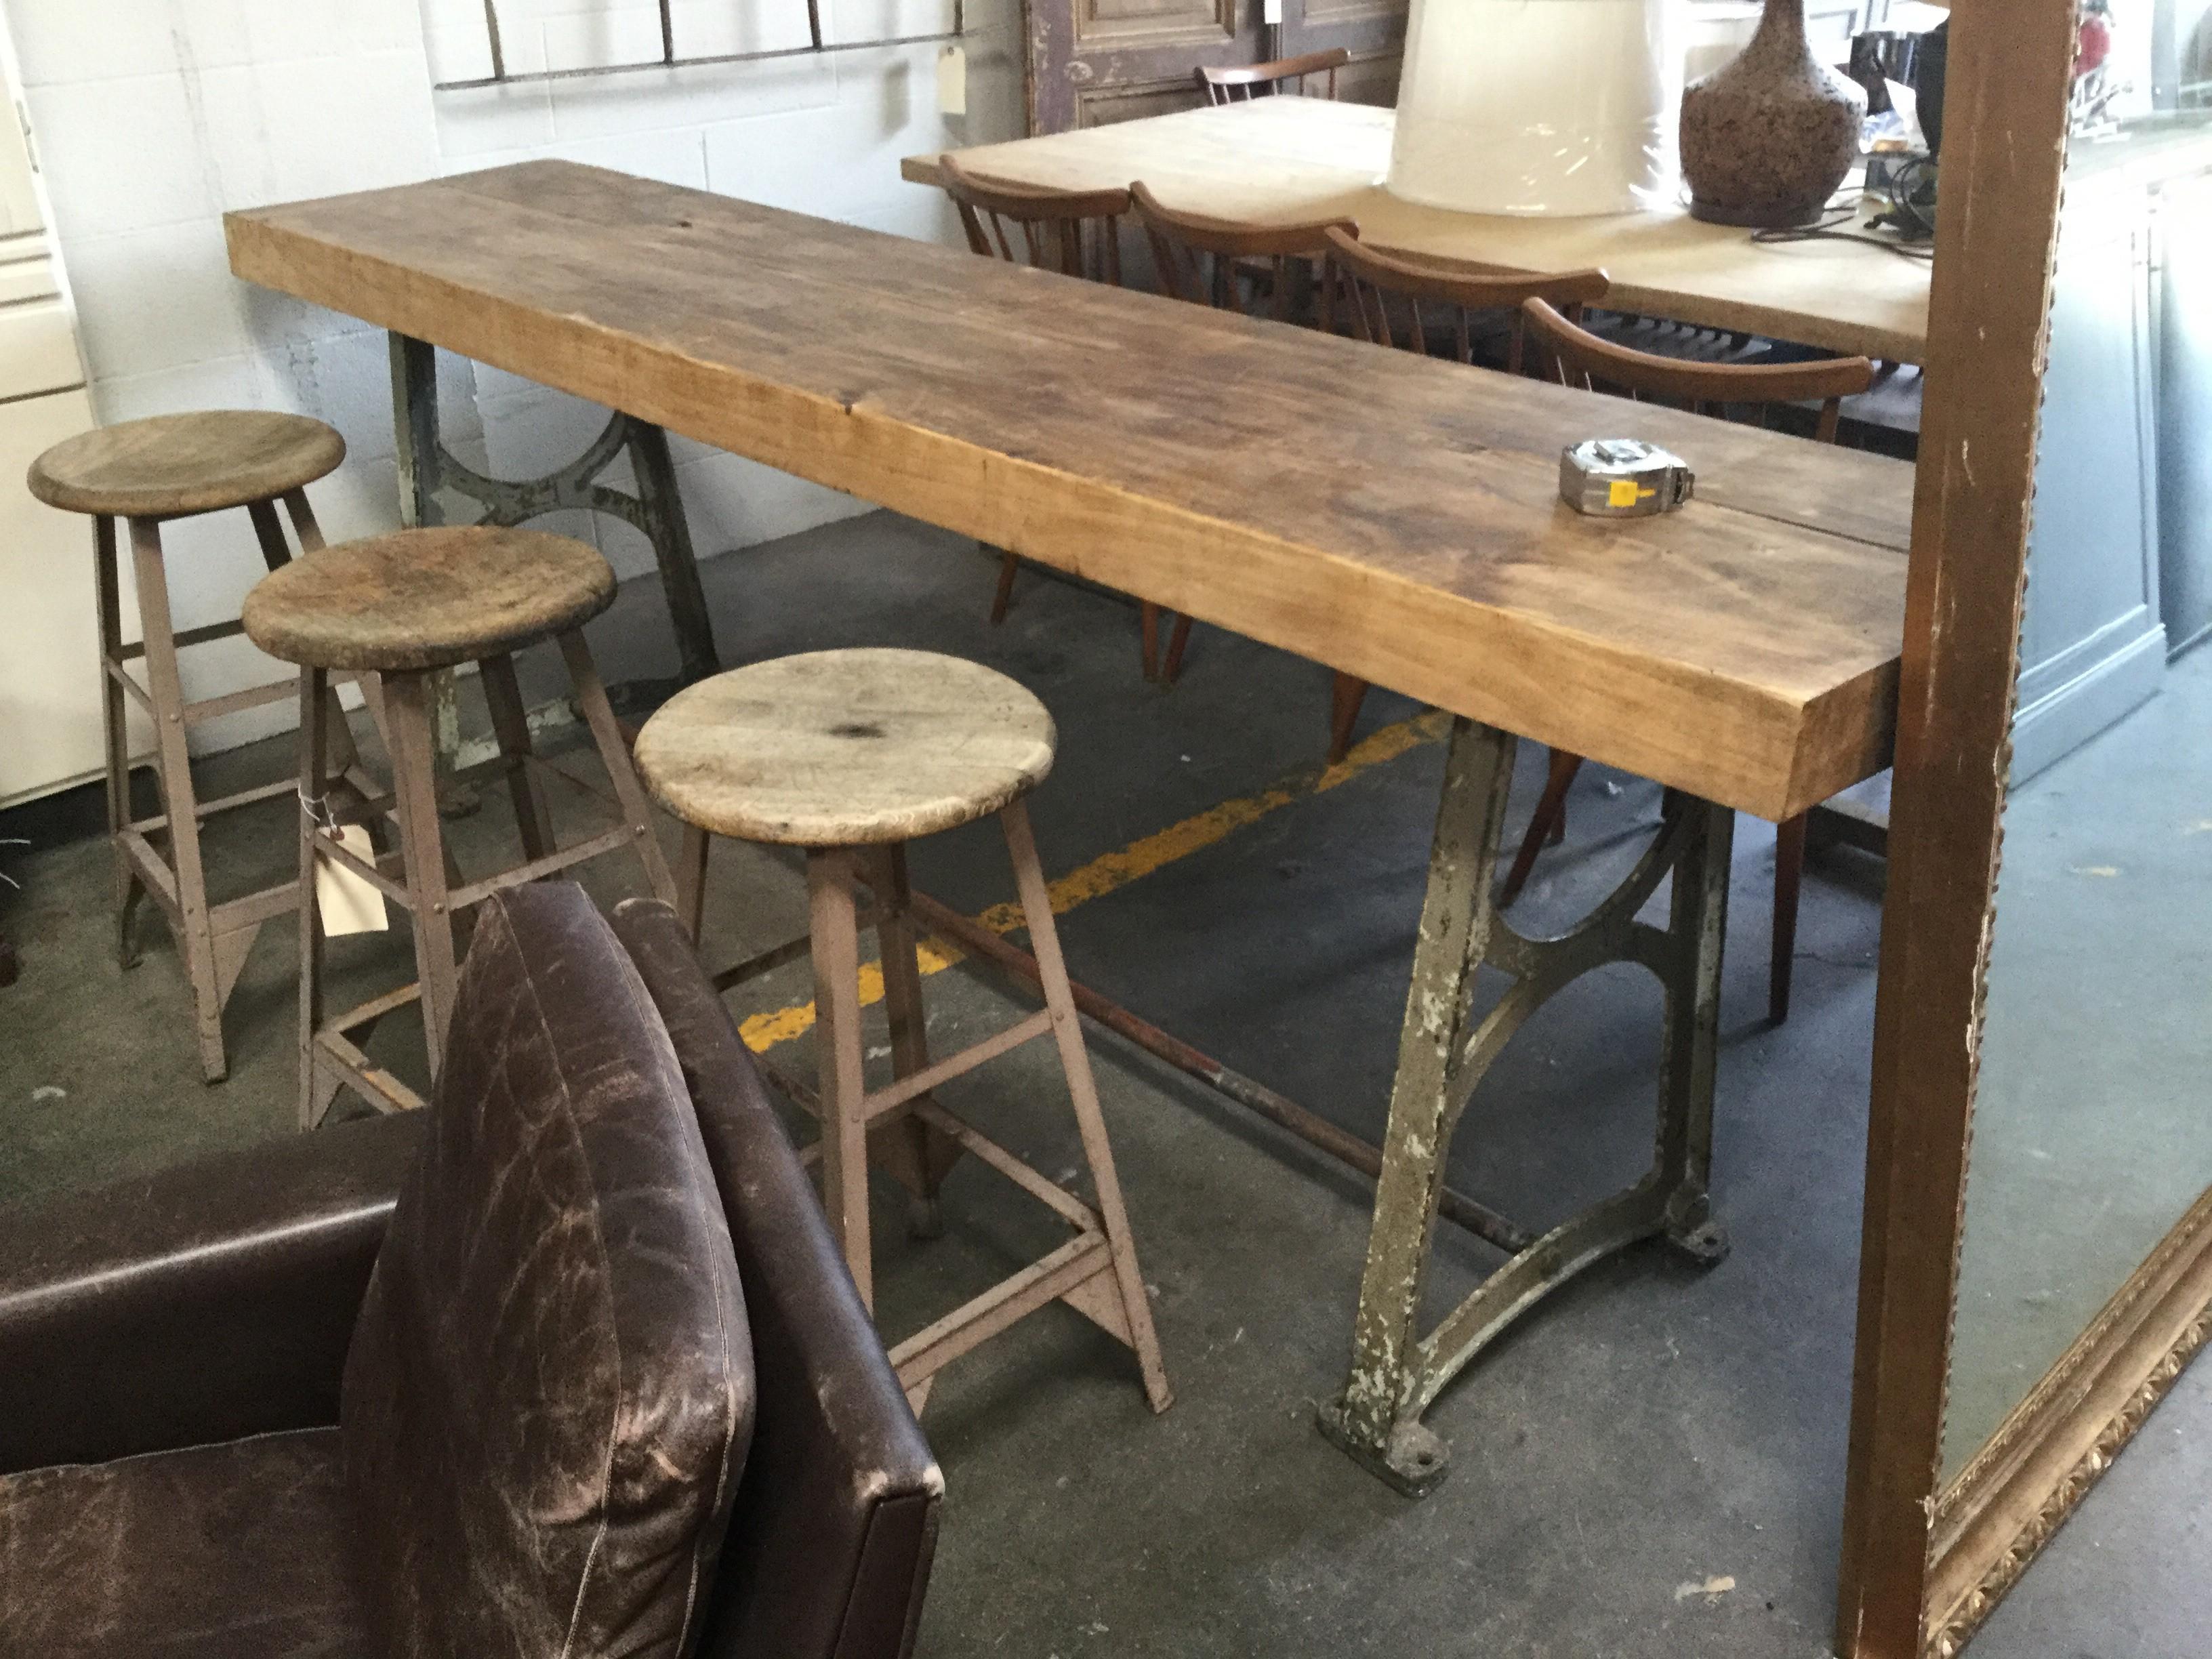 Table de travail européenne vintage super unique. Le plateau en bois massif repose sur une base en métal. Une pièce unique en son genre !